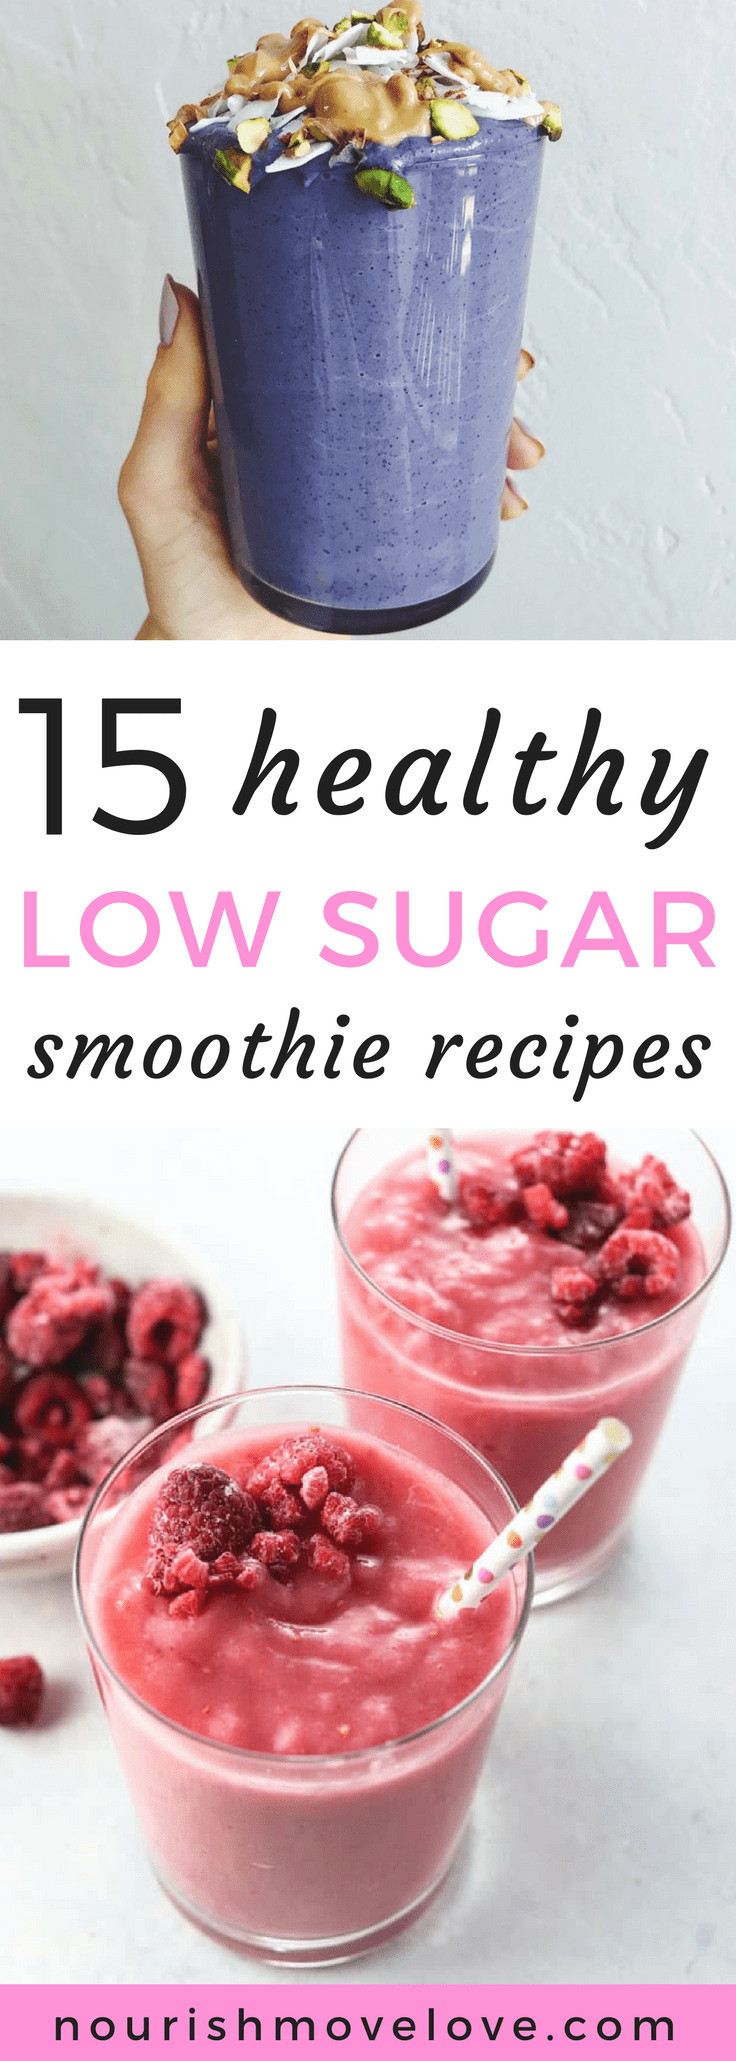 Low Sugar Smoothies
 15 Healthy Low Sugar Smoothie Recipes